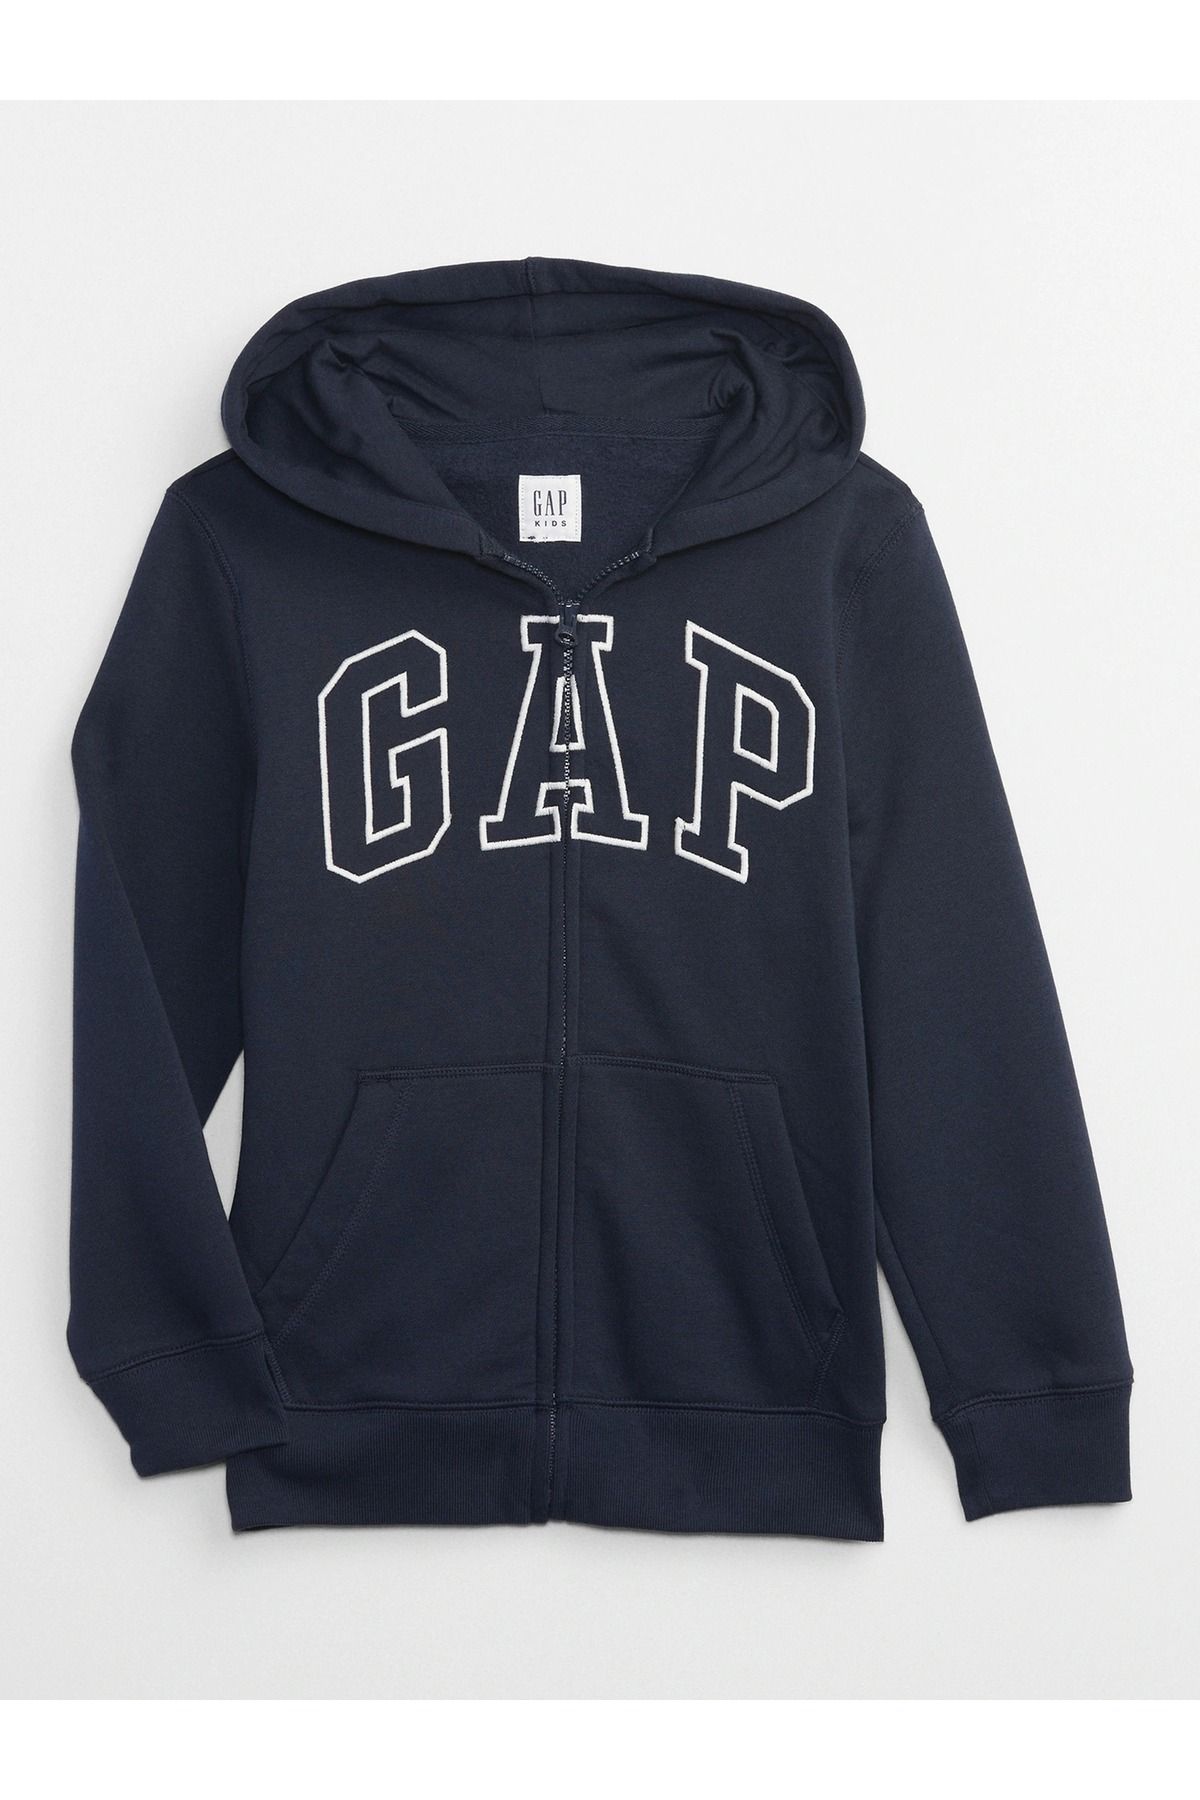 GAP Erkek Çocuk Lacivert Gap Logo Kapüşonlu Sweatshirt